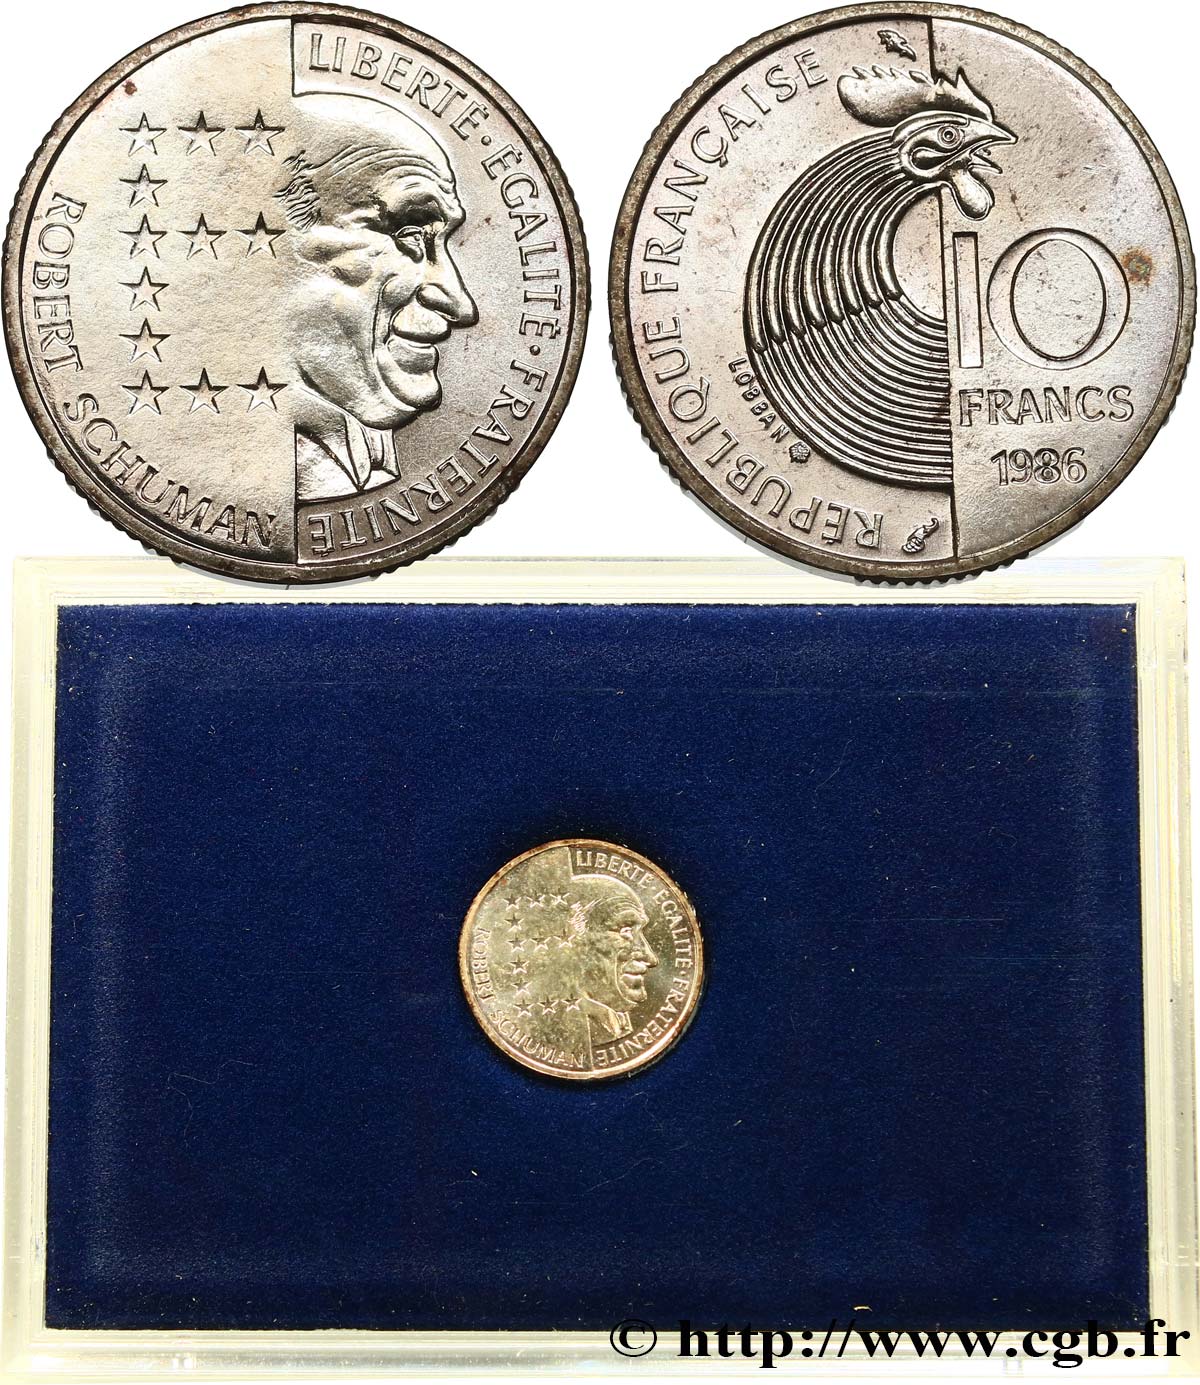 Brillant Universel argent 10 francs Robert Schuman 1986 Paris F5.1303 3 MS 